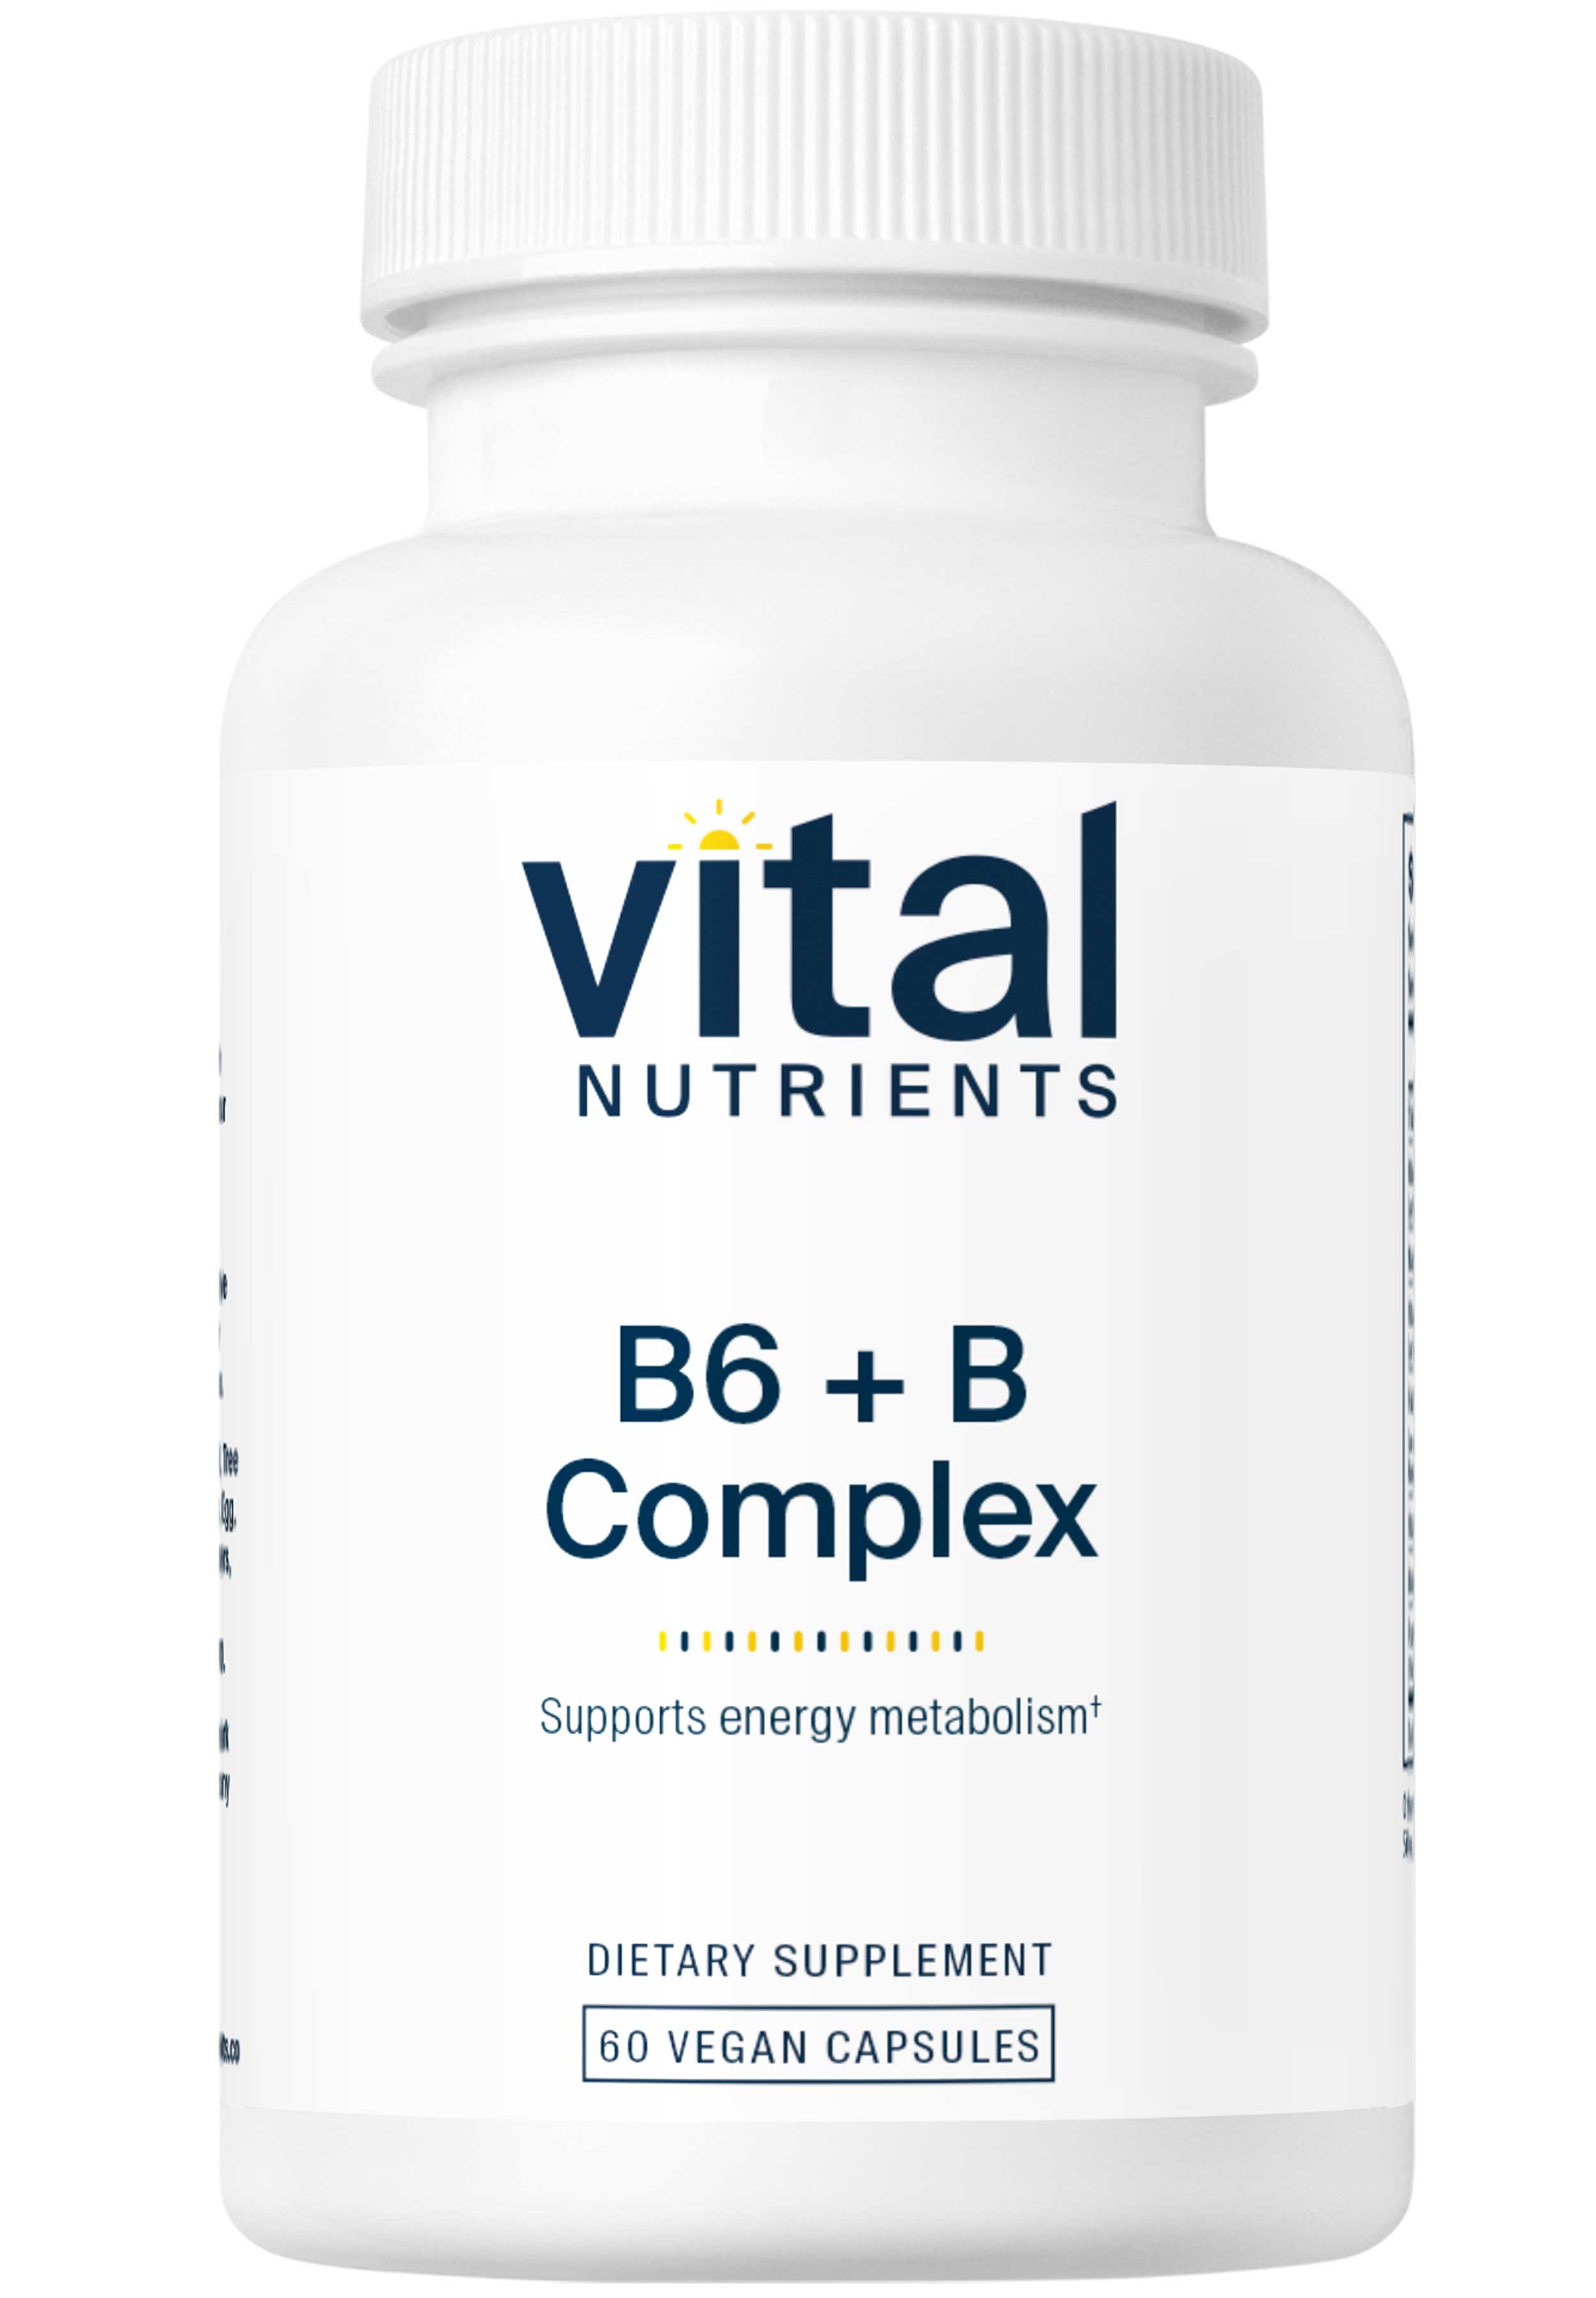 Vital Nutrients B6 + B Complex